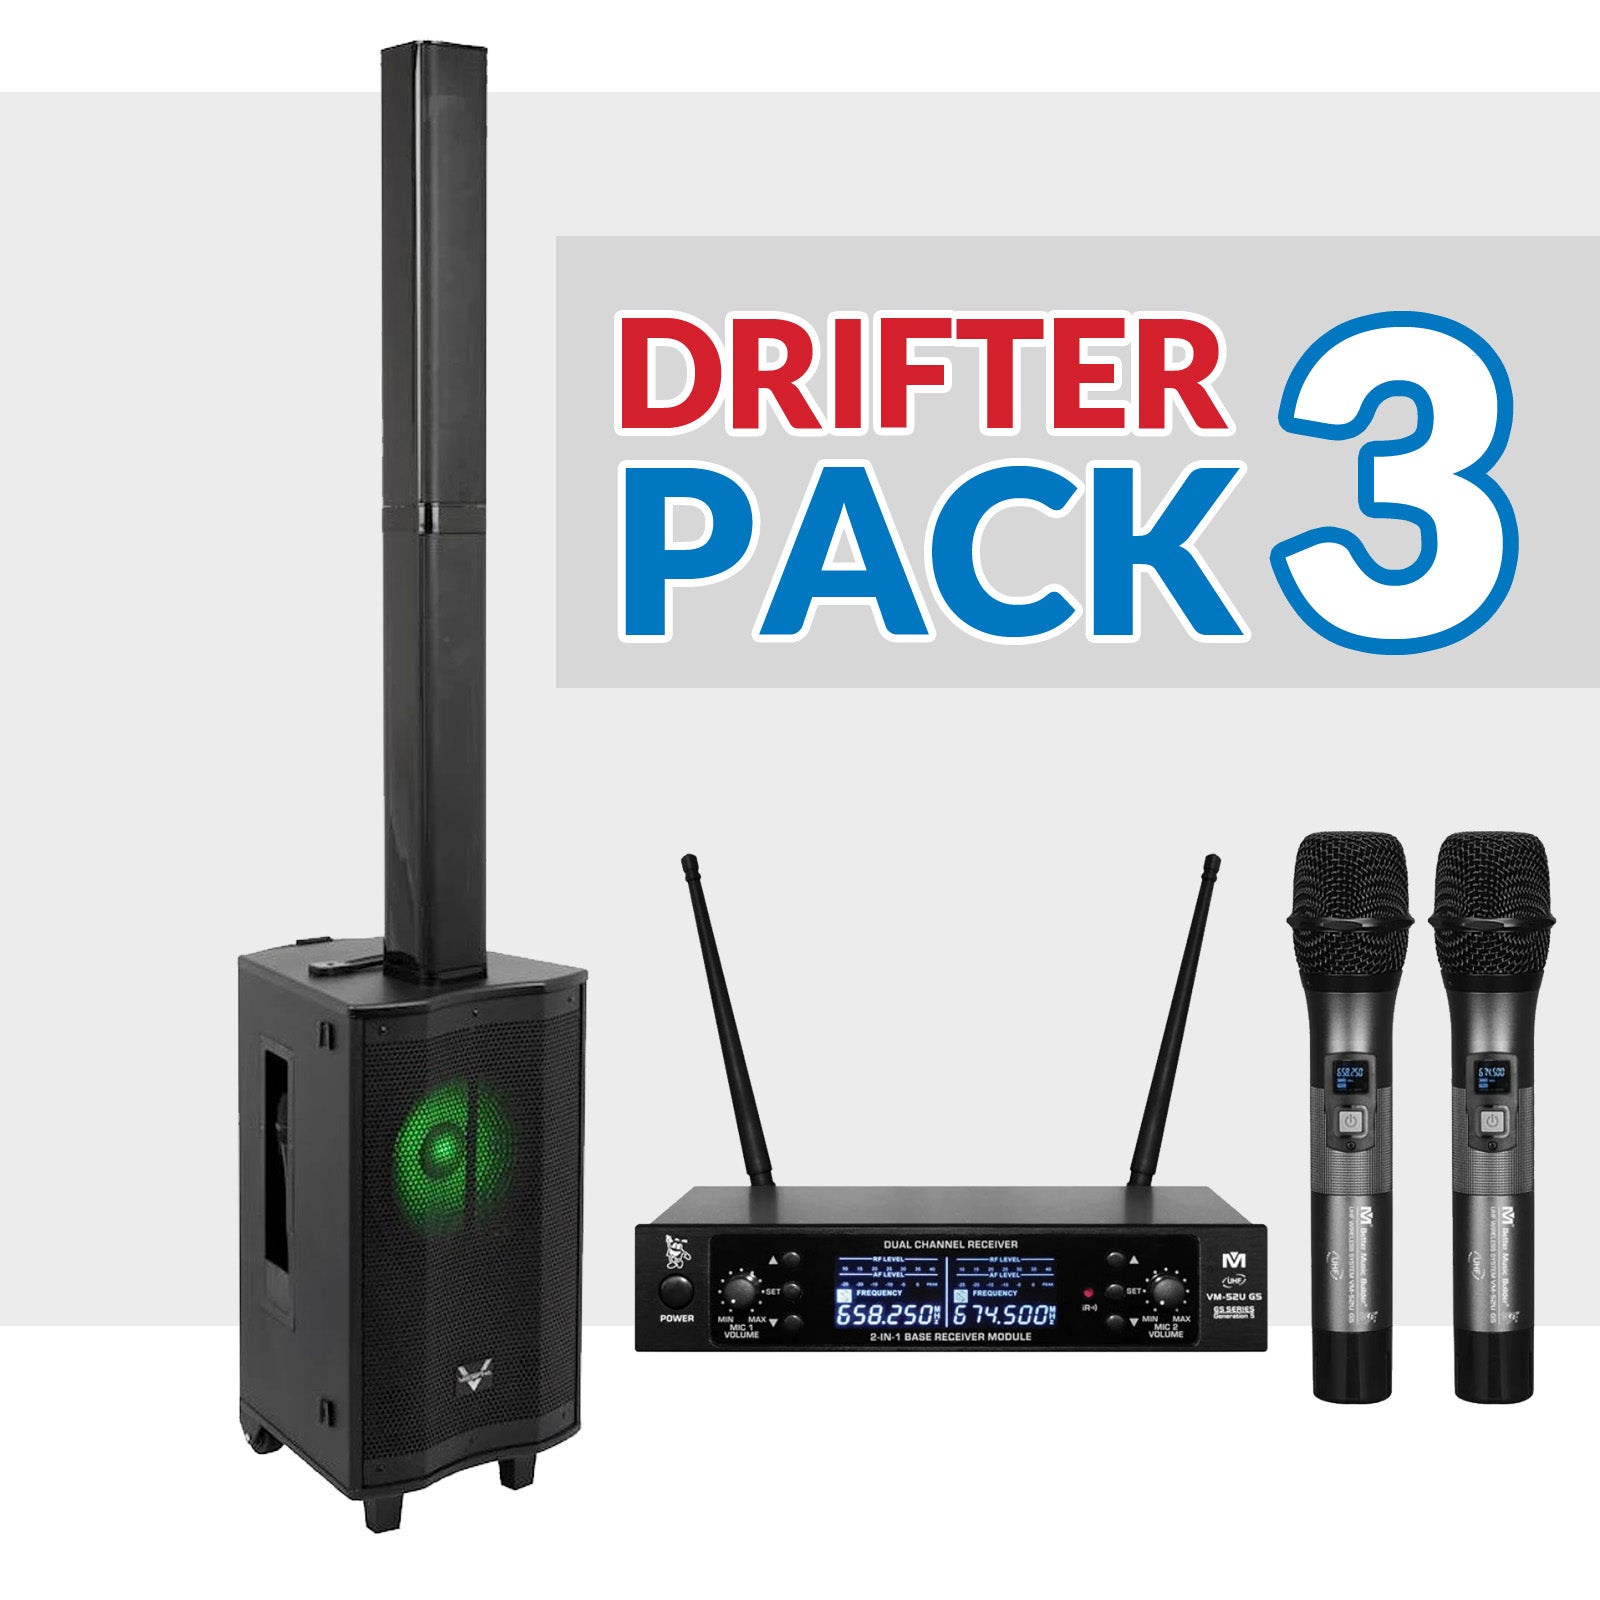 Drifter Package 03: VocoPro Drifter + Better Music Builder VM-52 G5